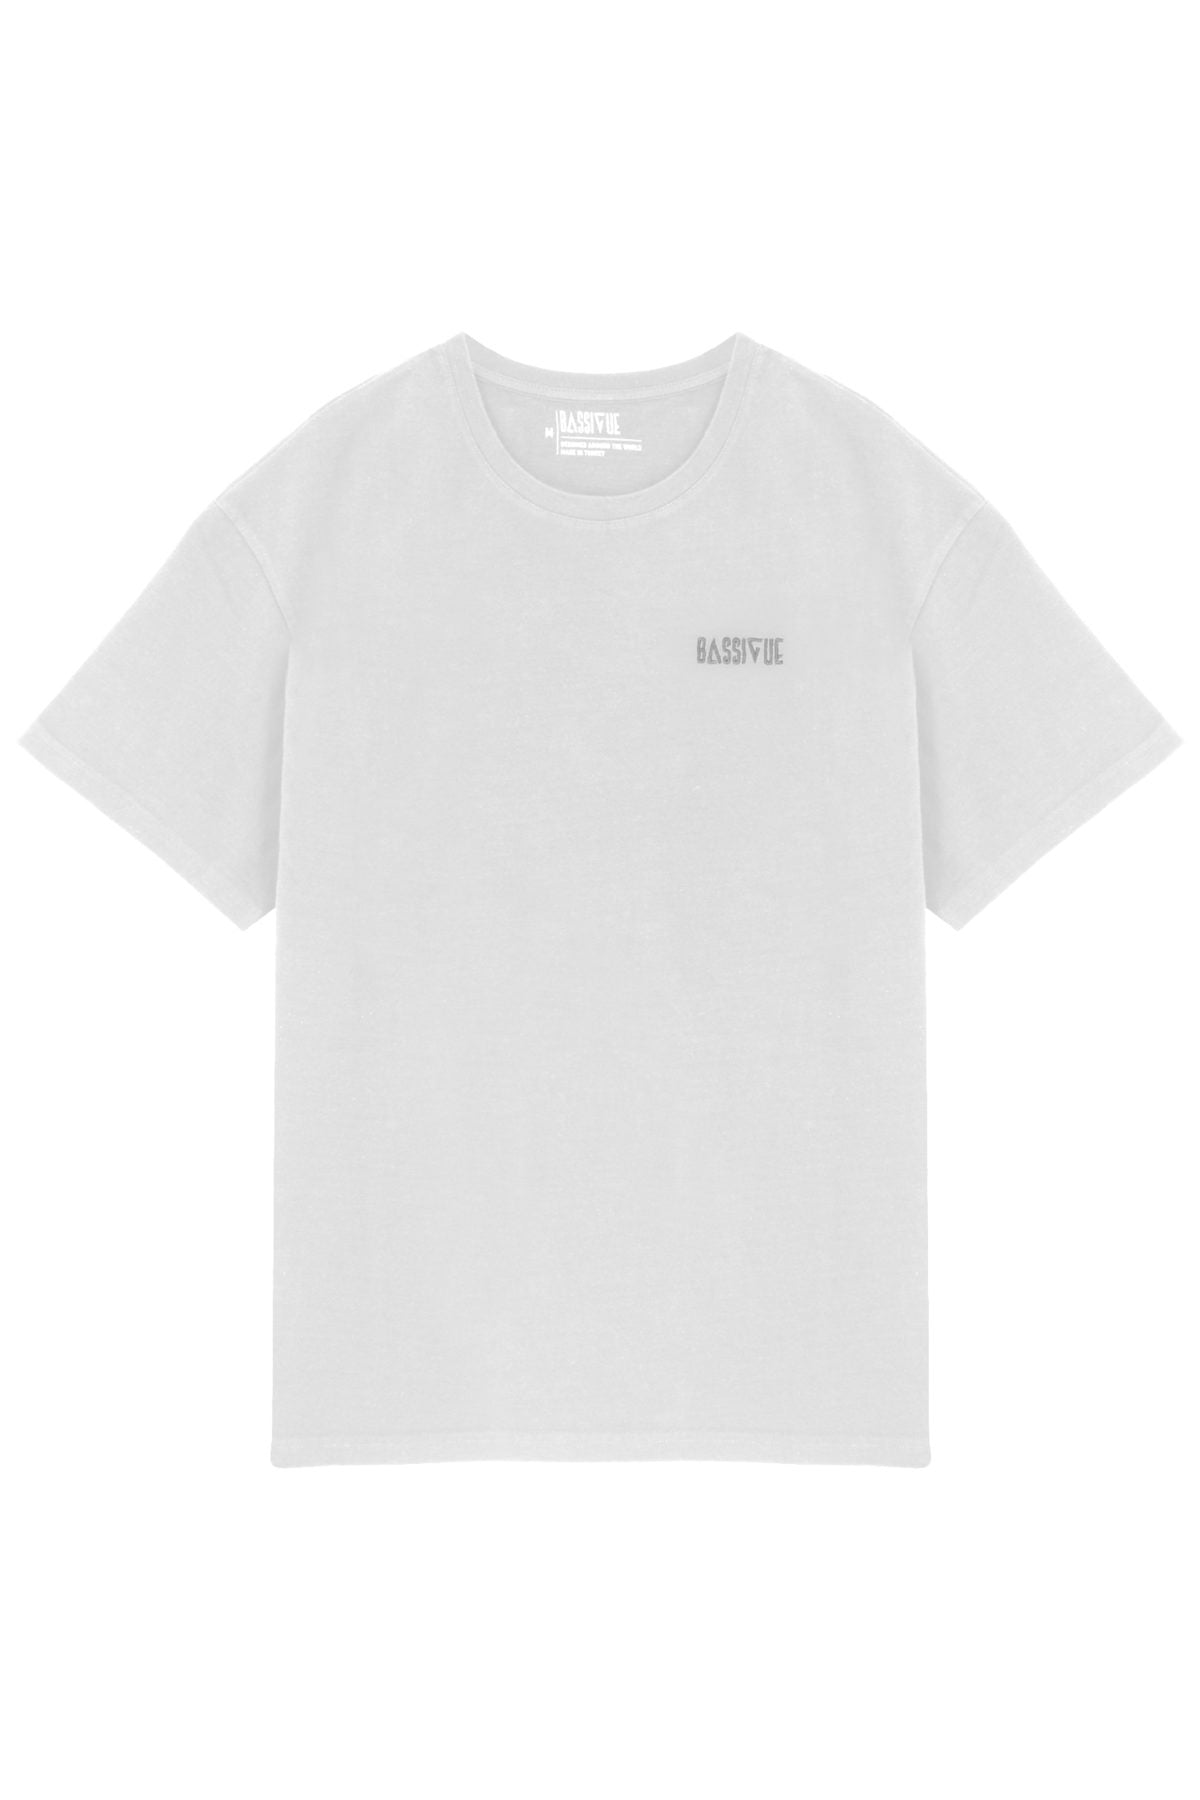 High Density T-Shirt - White